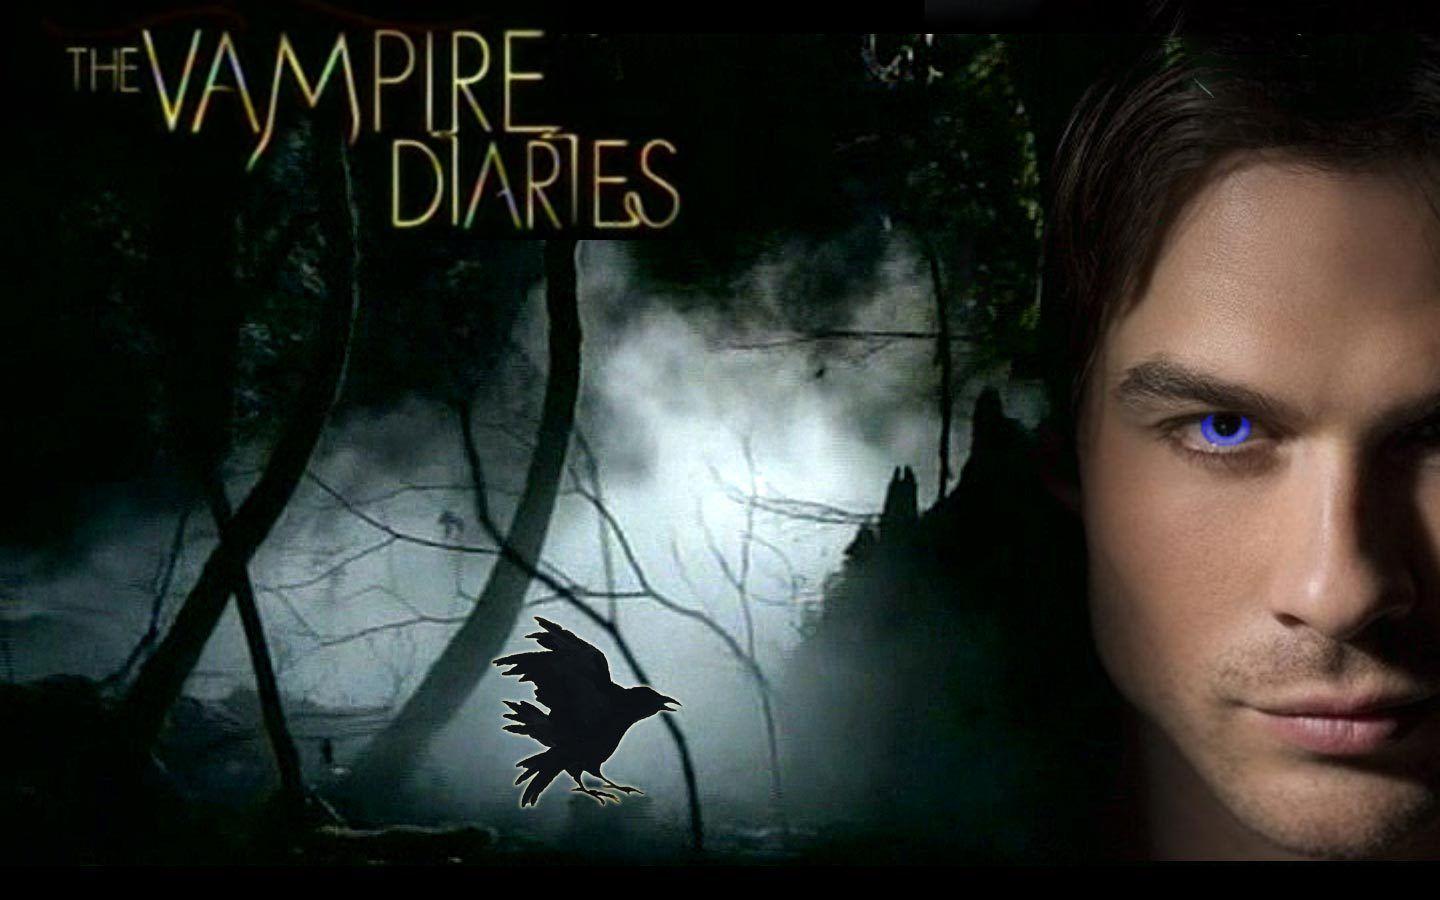 The Vampire Diaries. movies. Damon, TVs and Movie